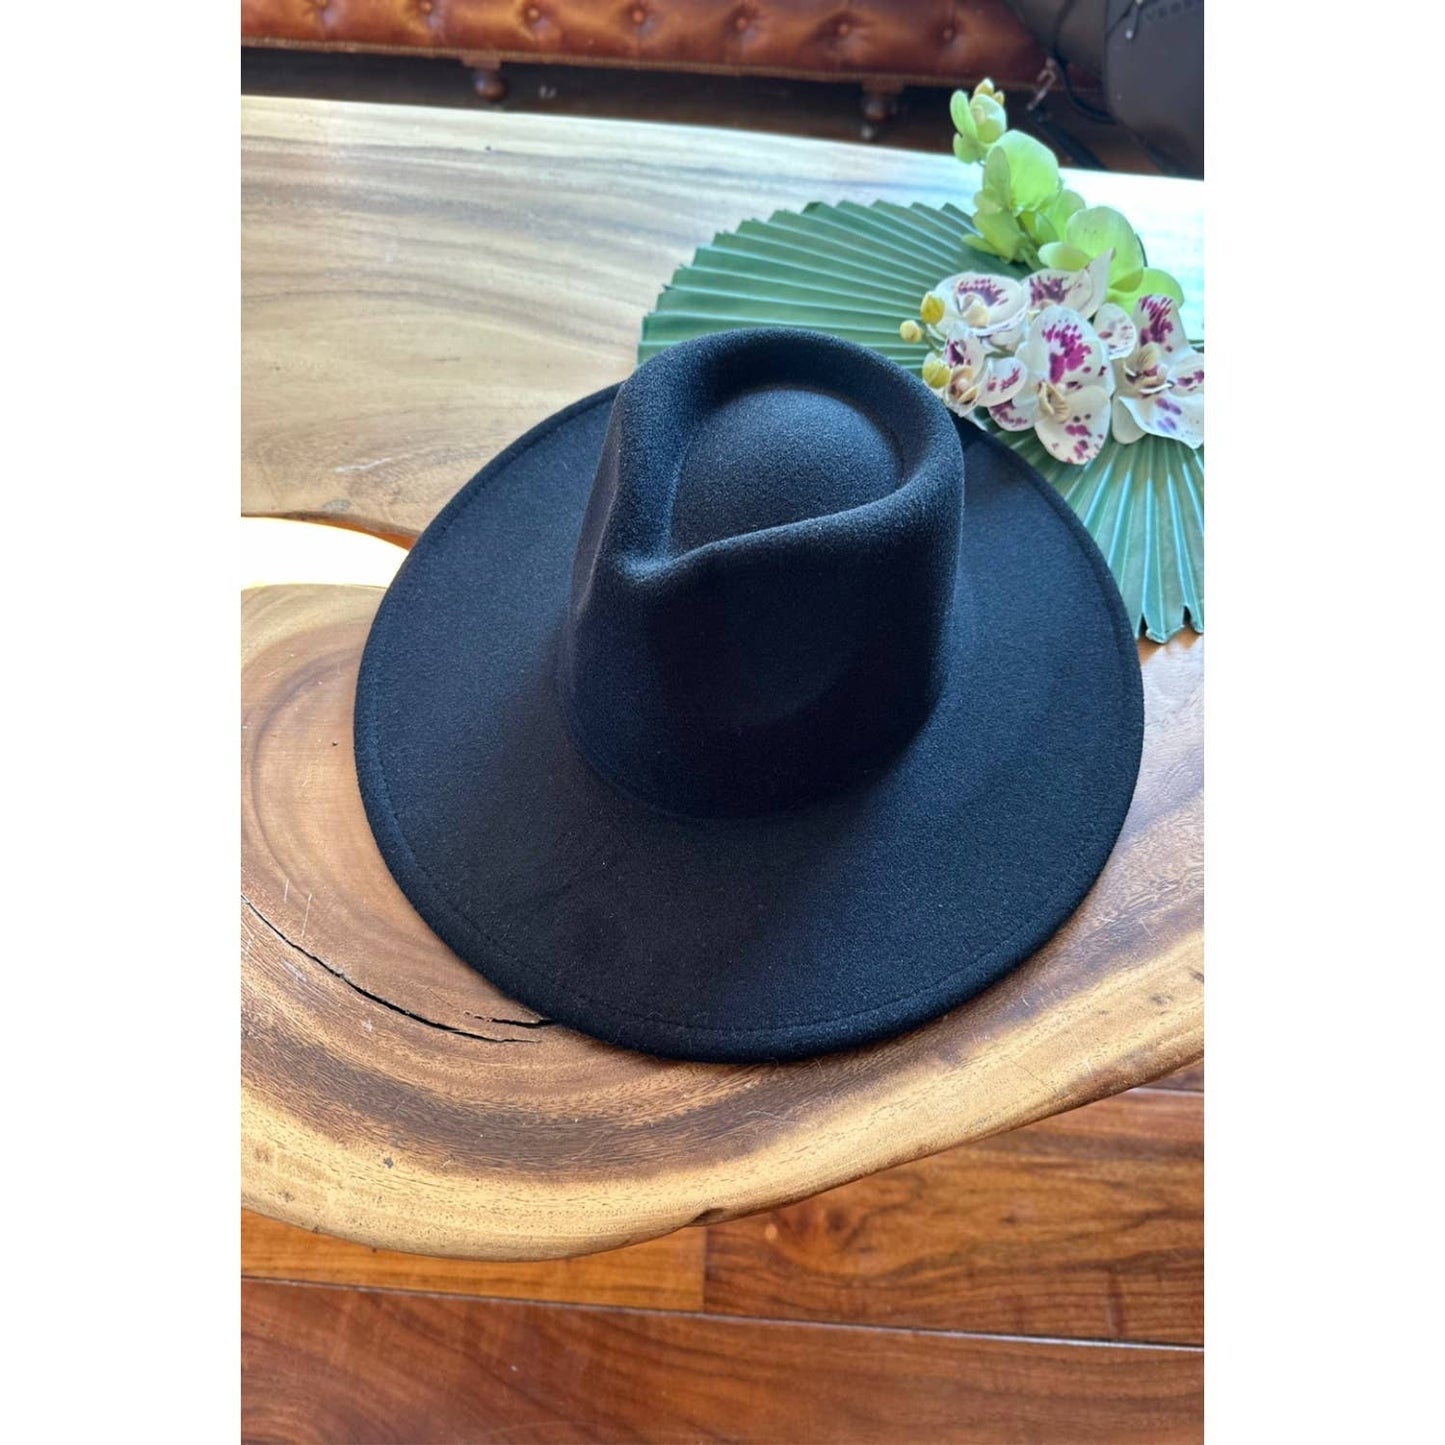 New Color WIDE BRIM DANDY PANAMA HAT FOR WOMEN  Primium Hat : Plum / ONE SIZE